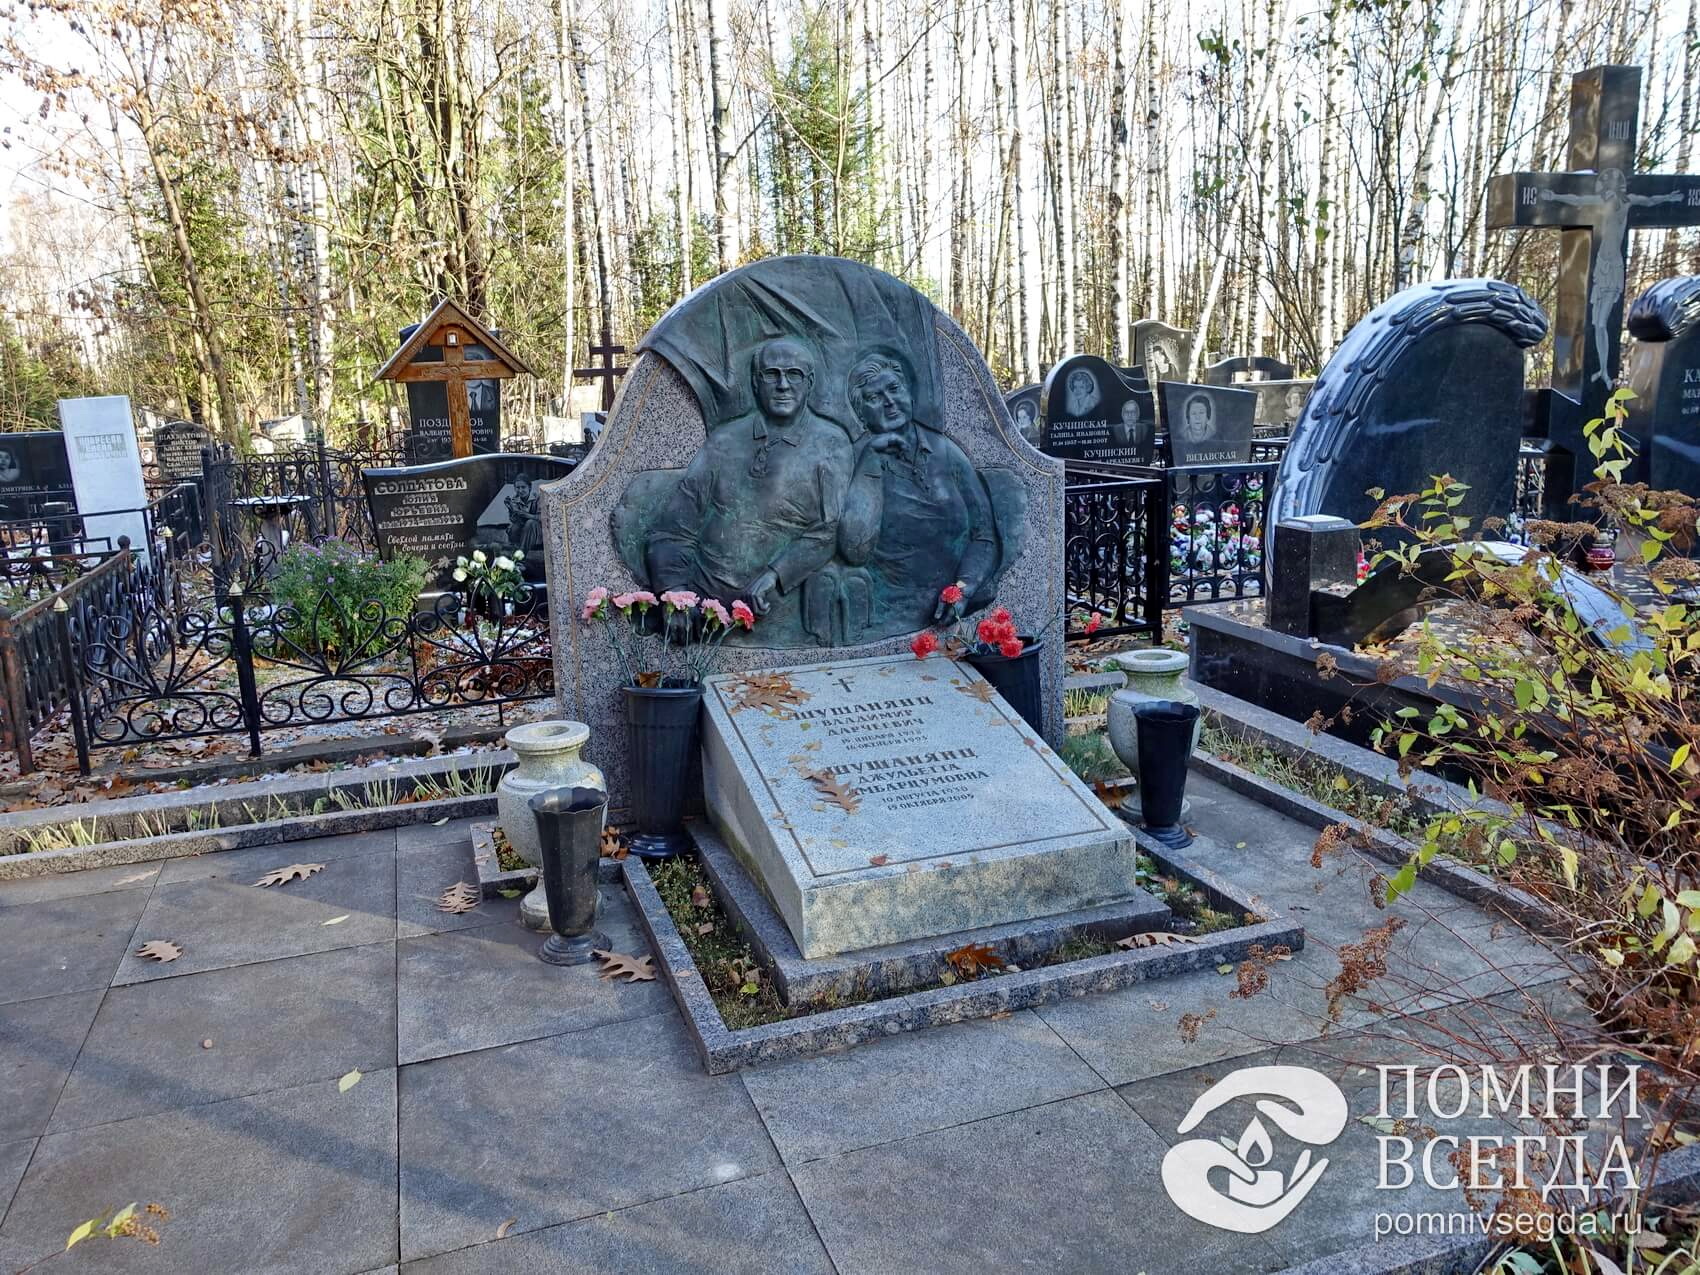 Необычное надгробье с барельефами покойных